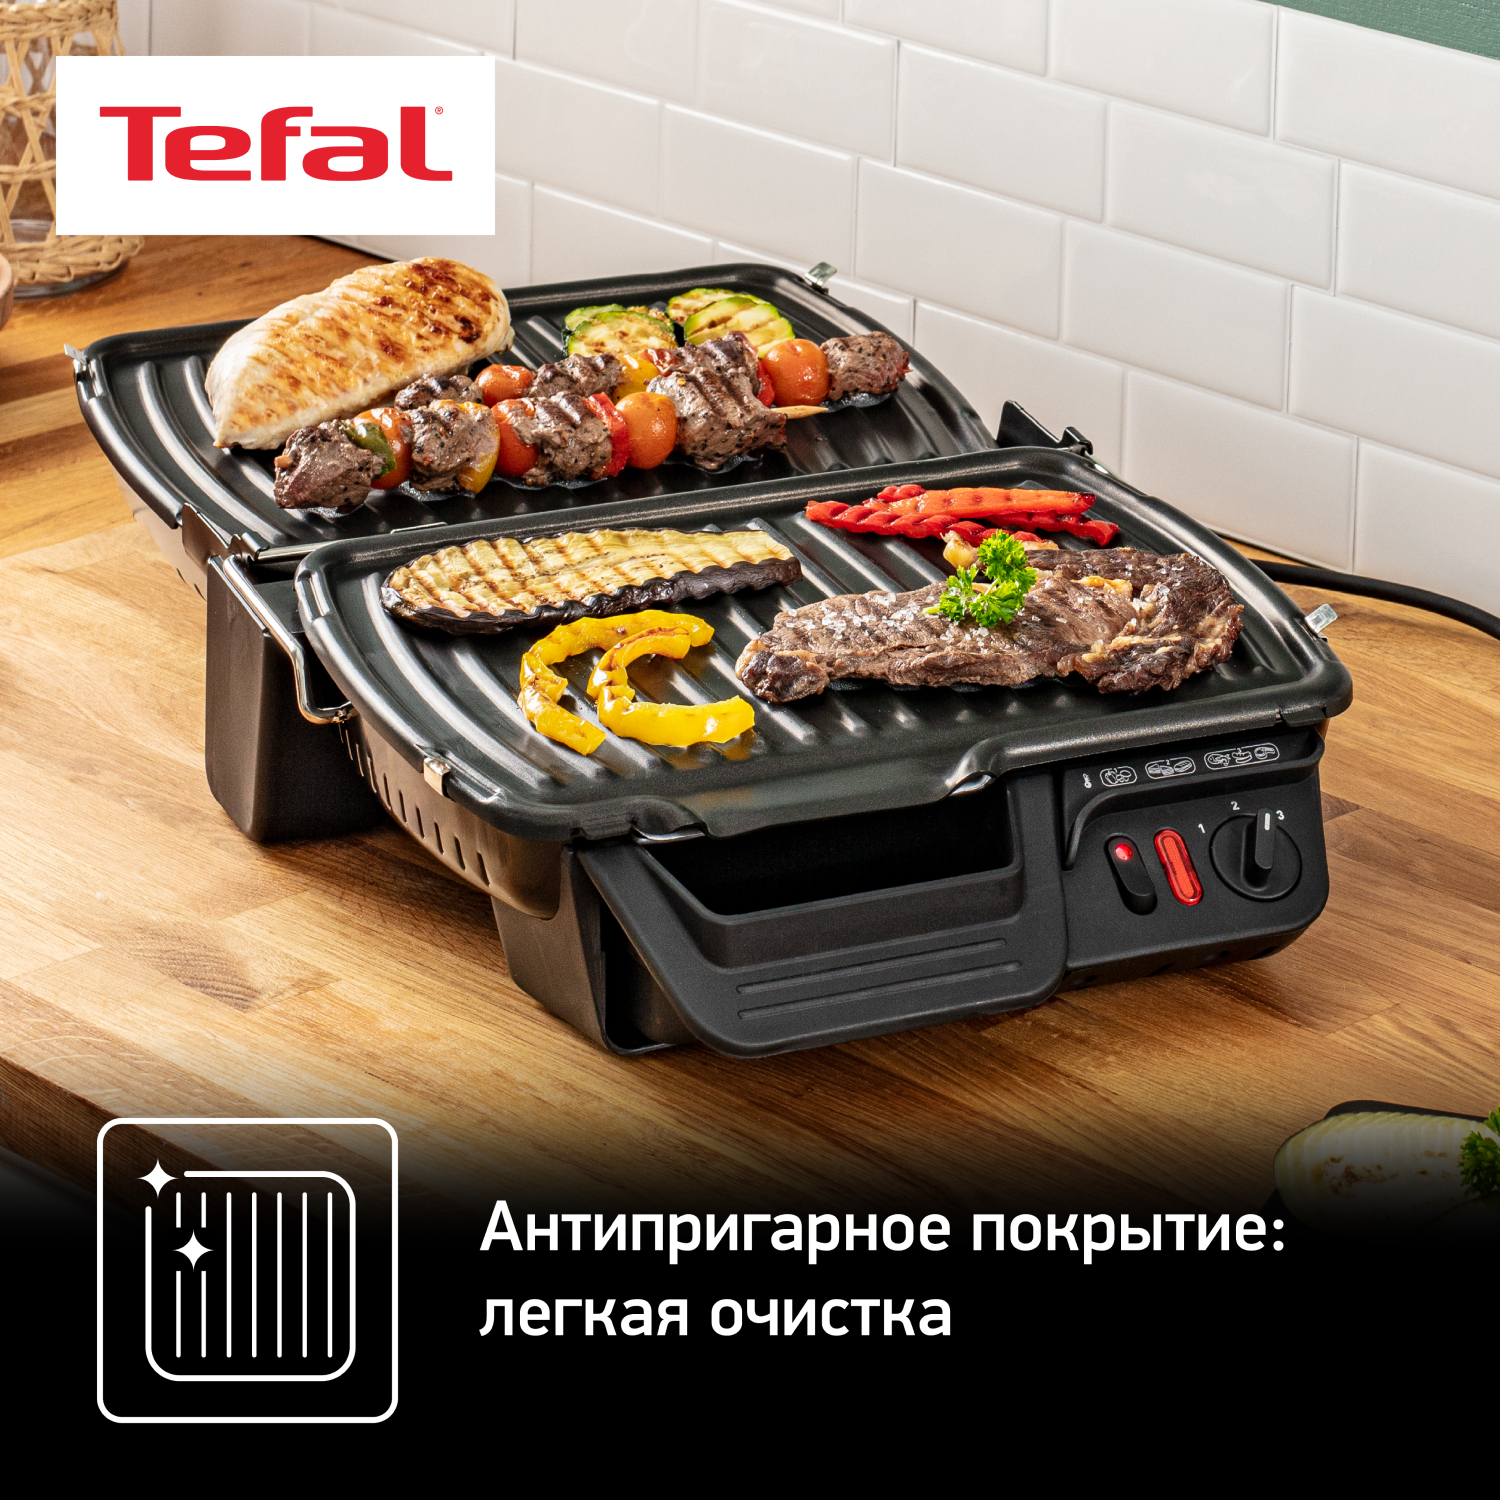 Электрогриль Tefal Health Grill Comfort GC306012, купить в Москве, цены в  интернет-магазинах на Мегамаркет